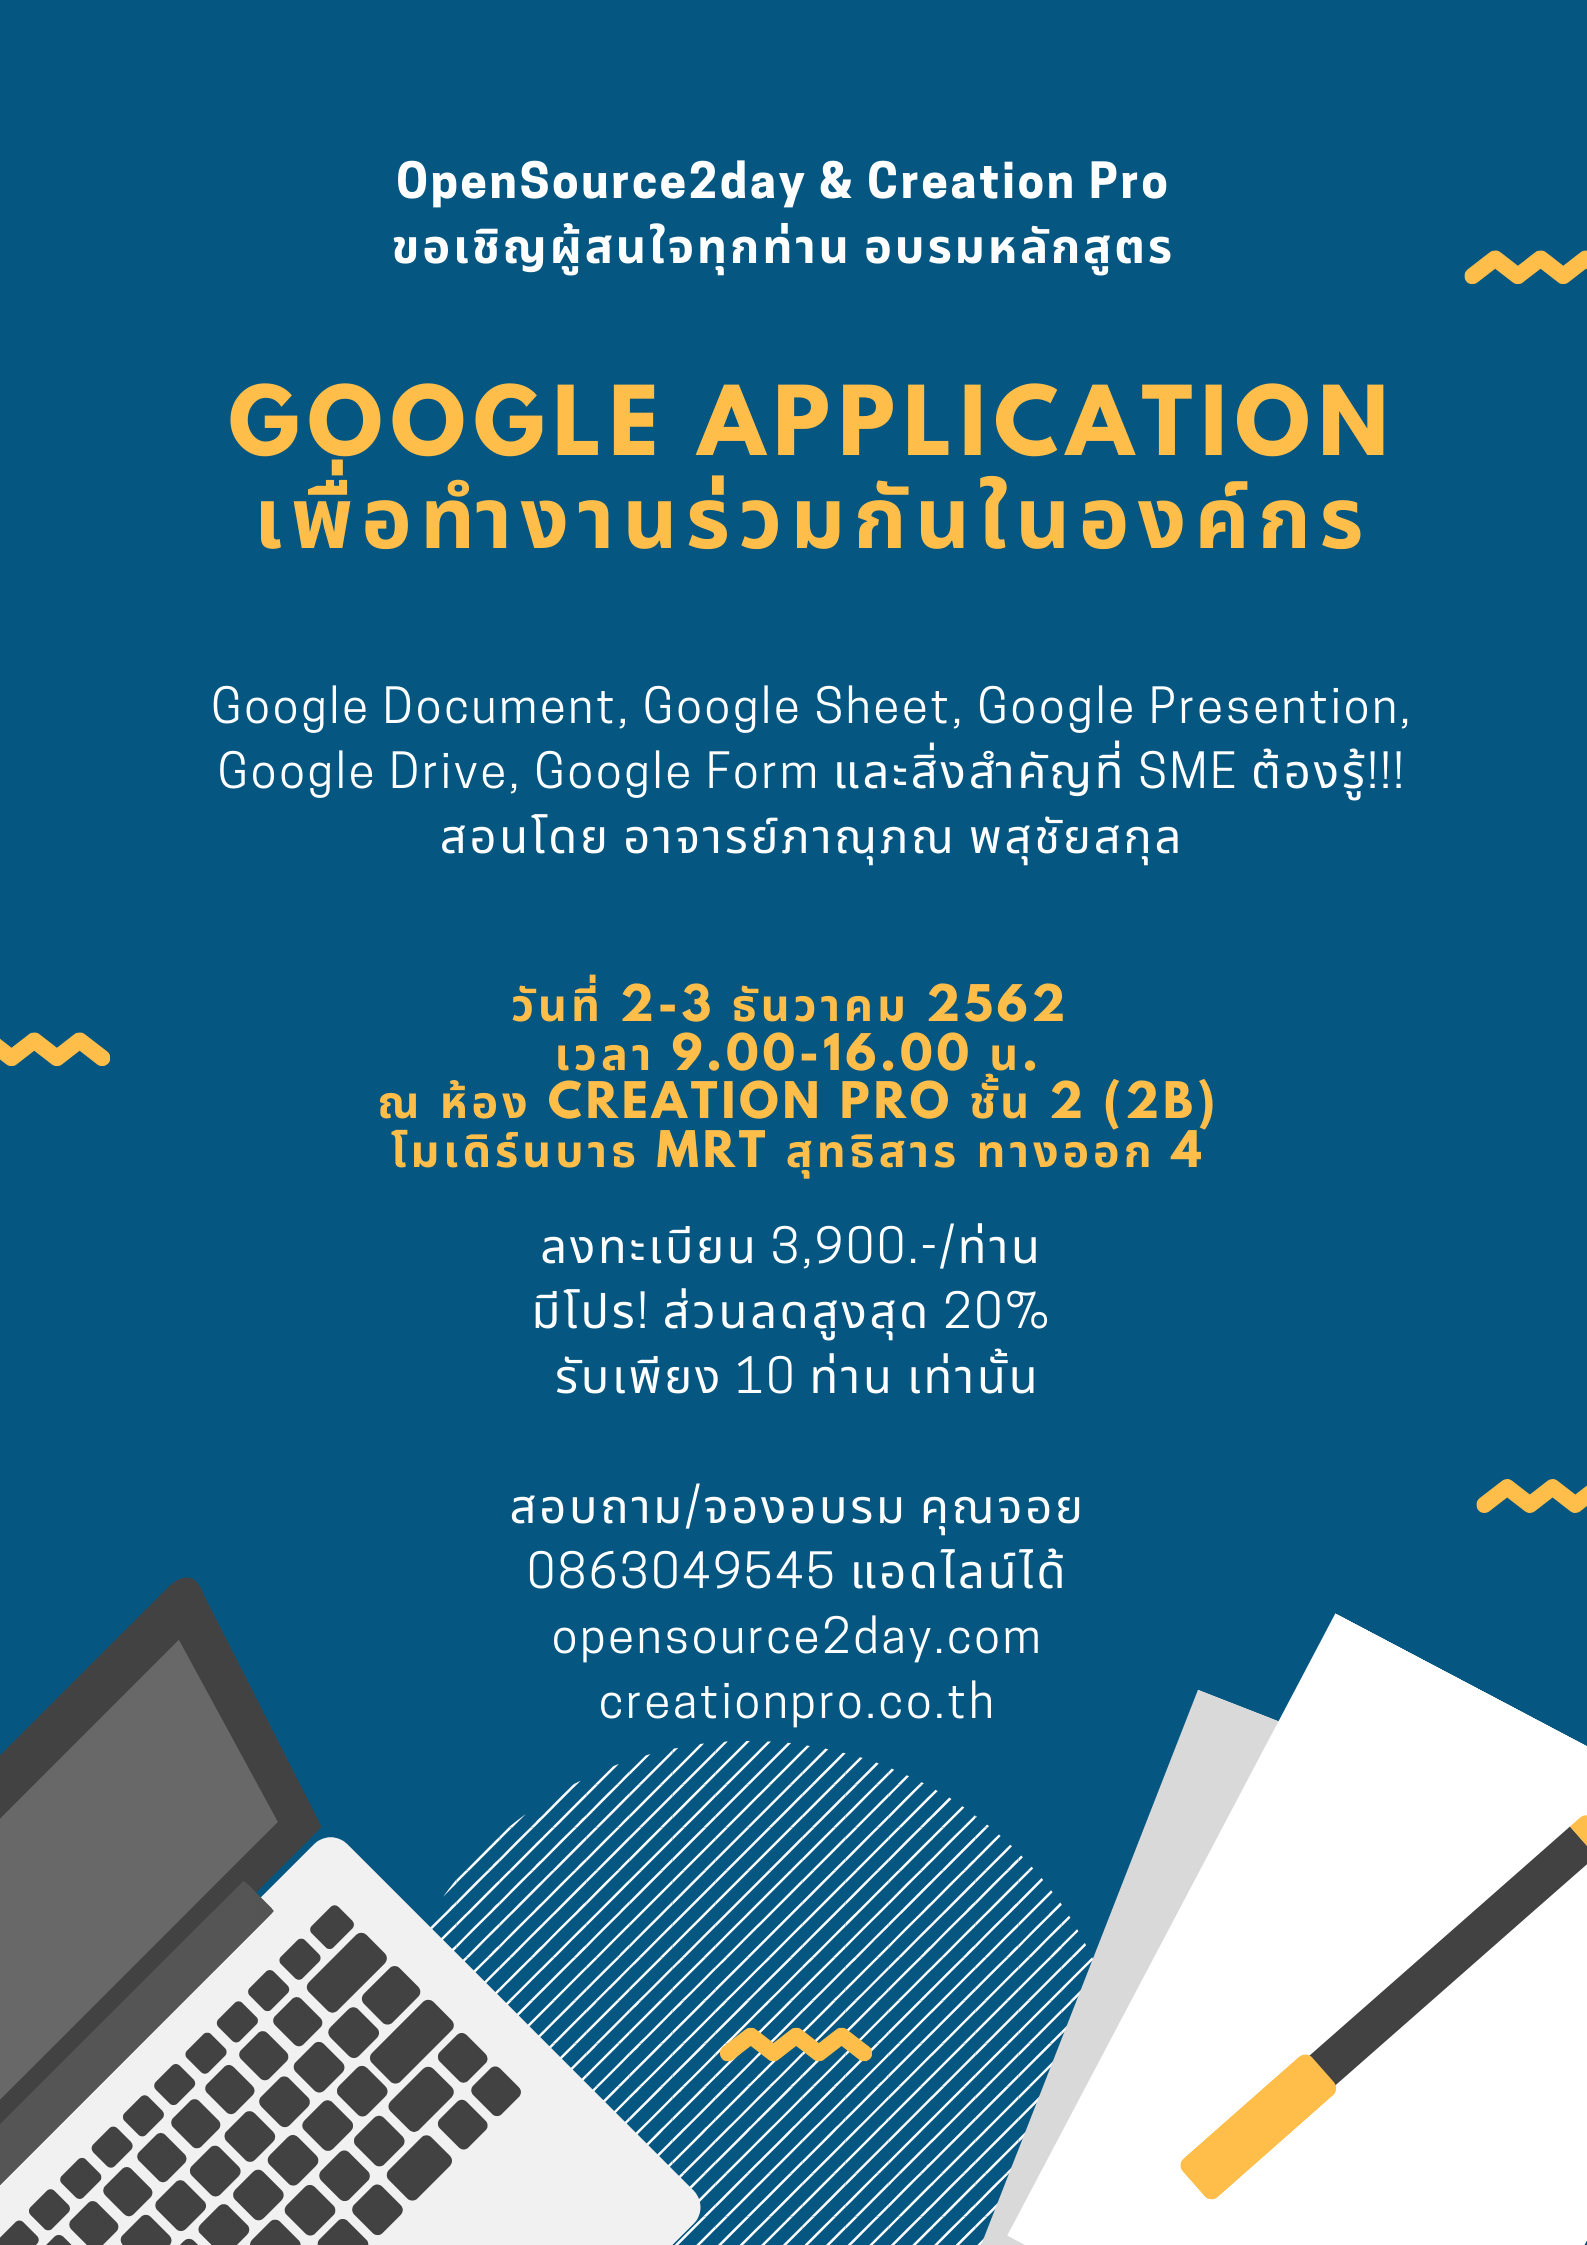 ขอเชิญทุกท่าน อบรม "Google Application เพื่อการทำงานร่วมกันในองค์กร" วันที่ 2-3 ธันวาคม 2562